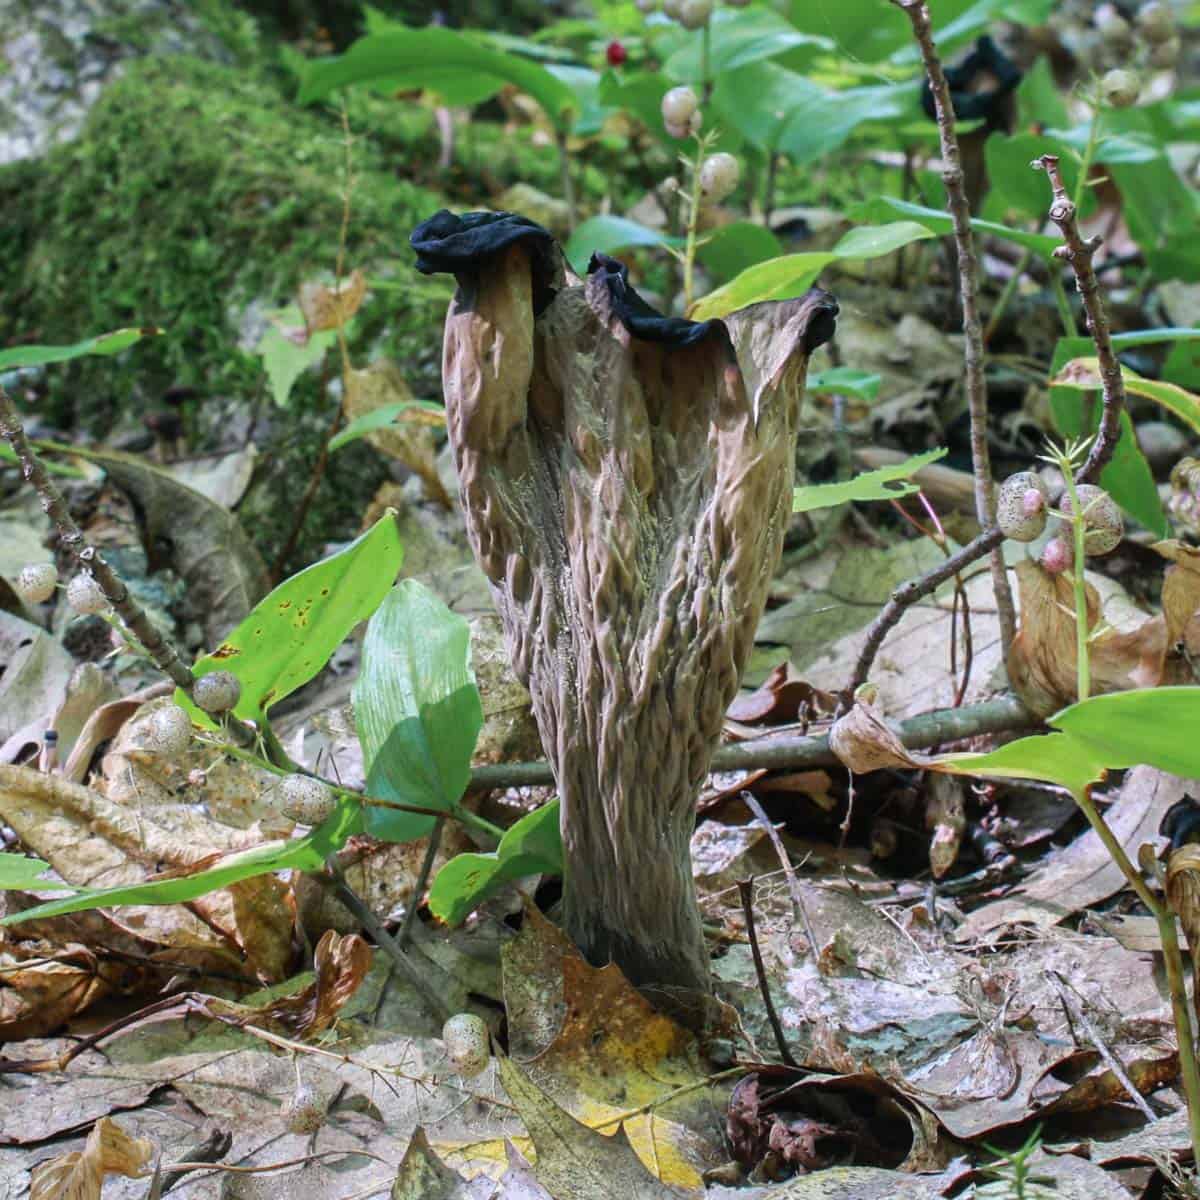 Black trumpet mushrooms or Craterellus fallax in wisconsin